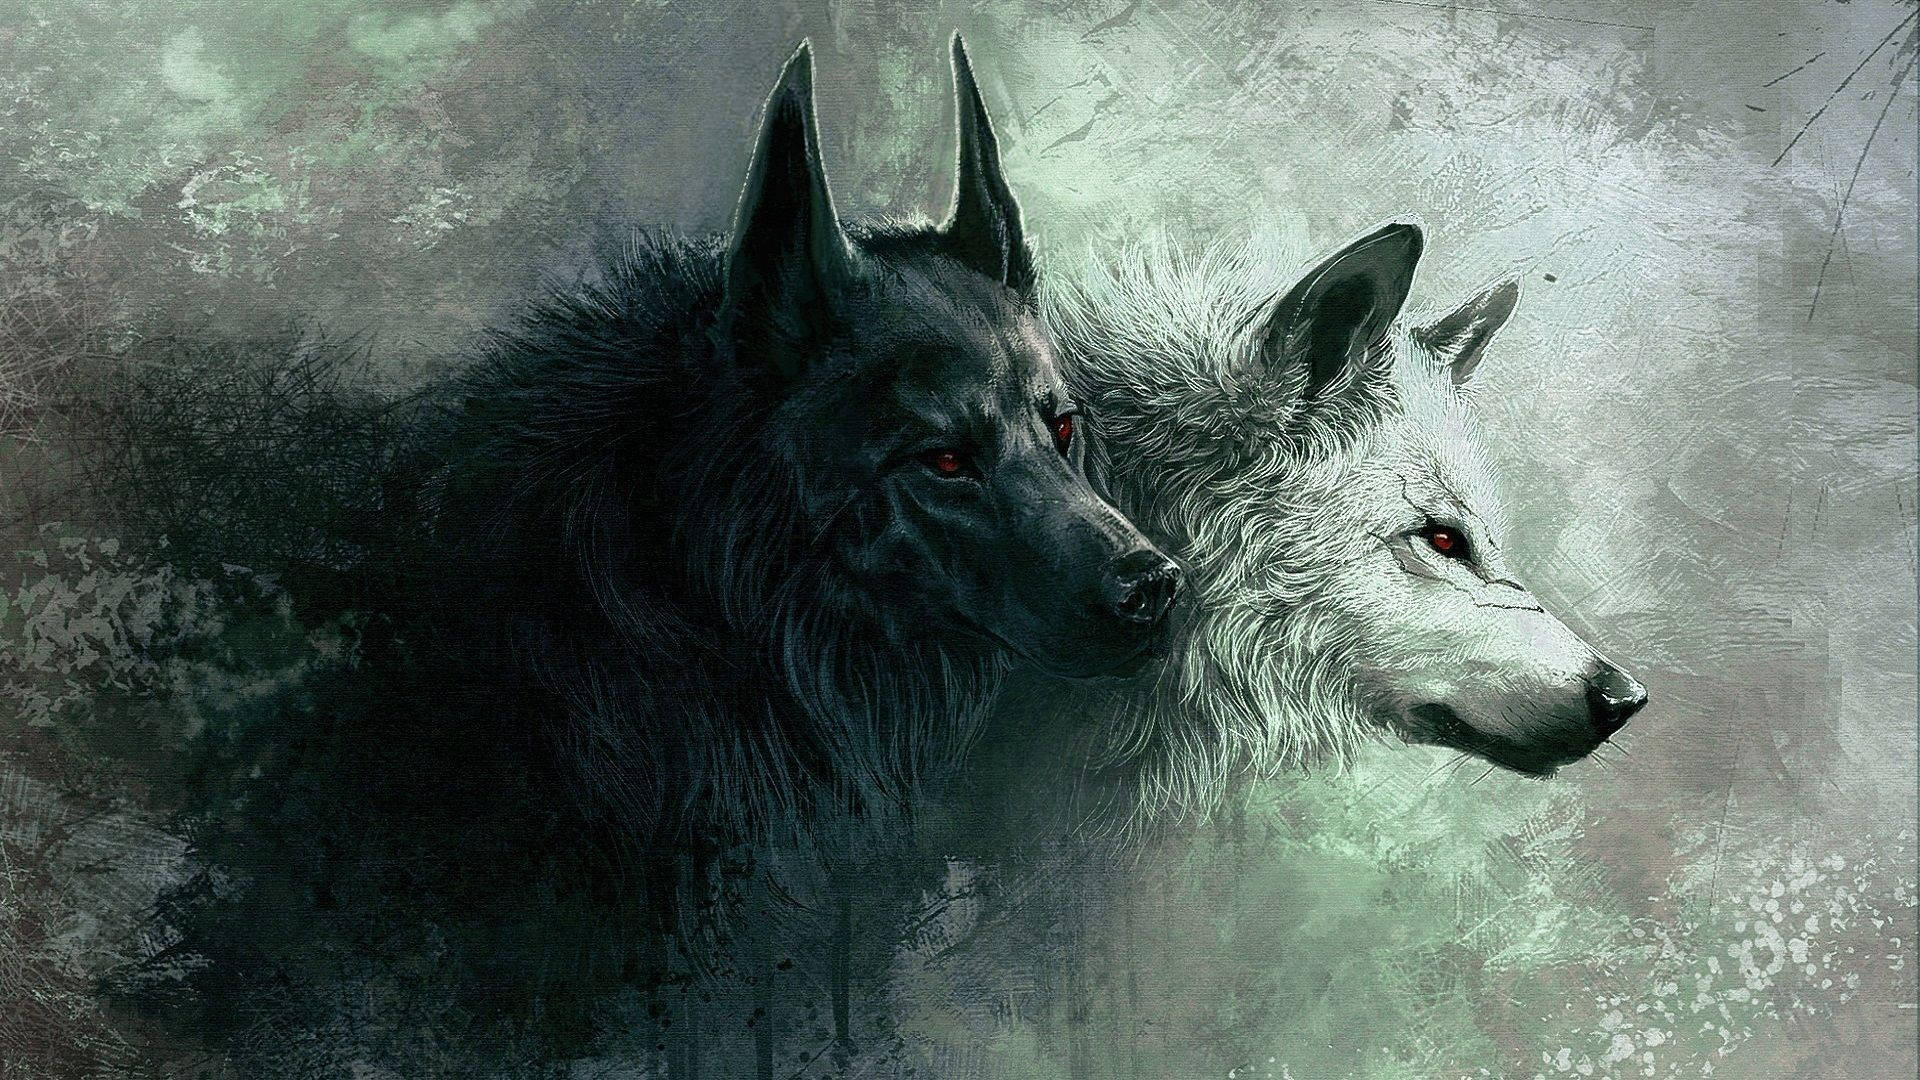 Running in the Forest - Vred sorte og hvide ulve der løber gennem skoven. Wallpaper